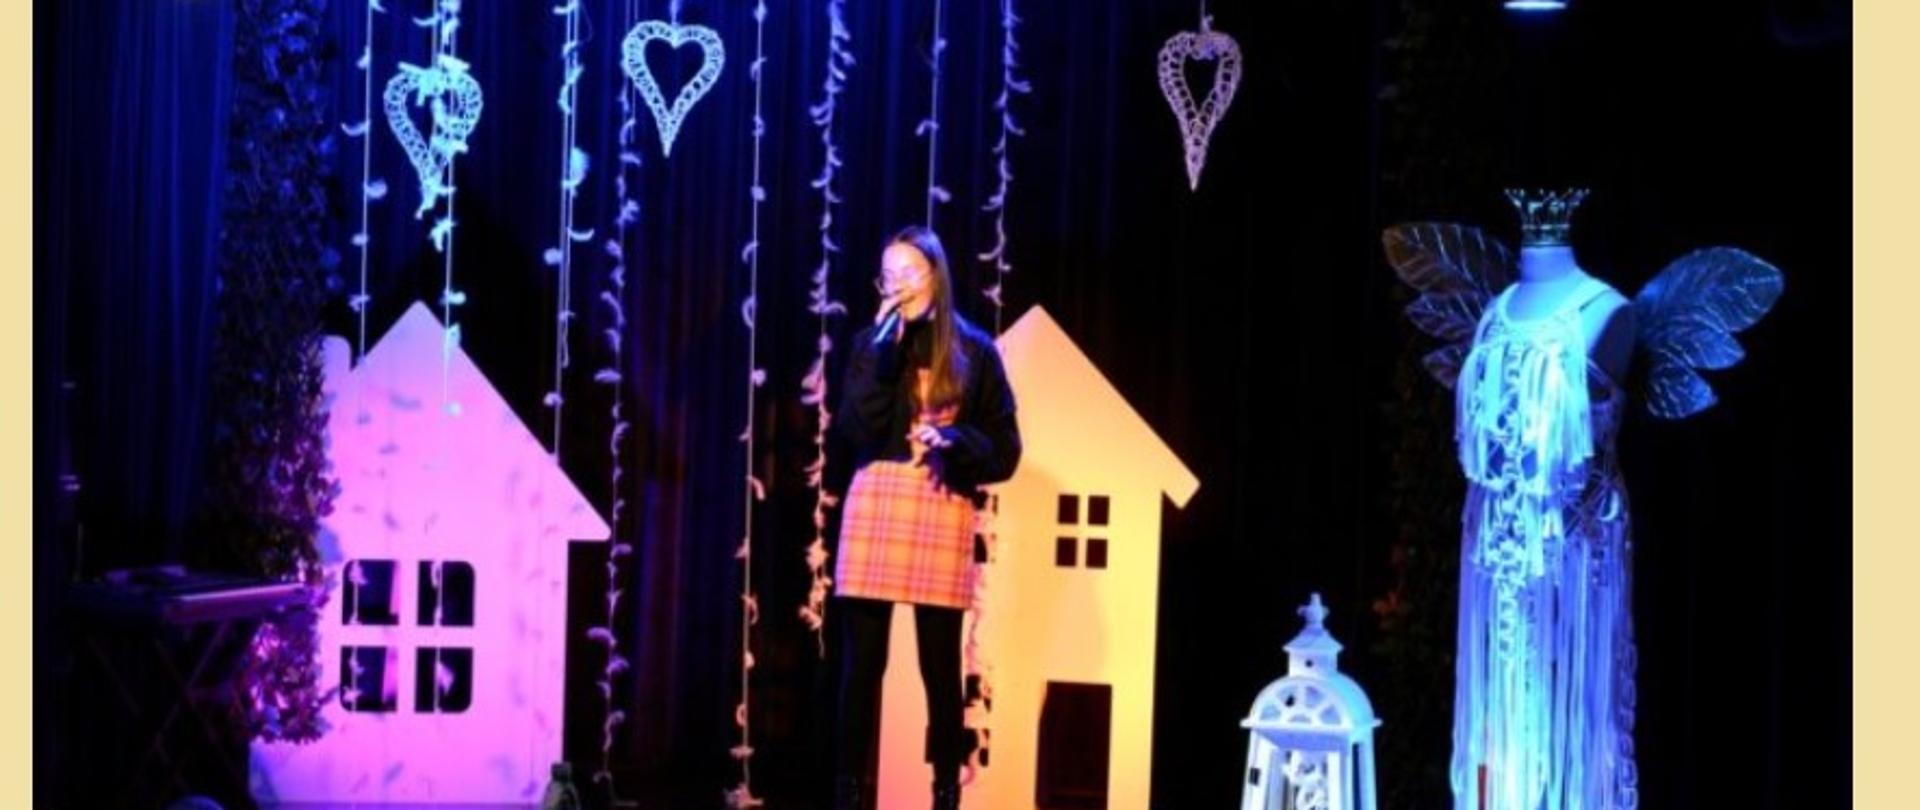 Wyróżniona uczennica śpiewa nagrodzoną piosenkę na tle dekoracji przedstawiającej kolorowe domki